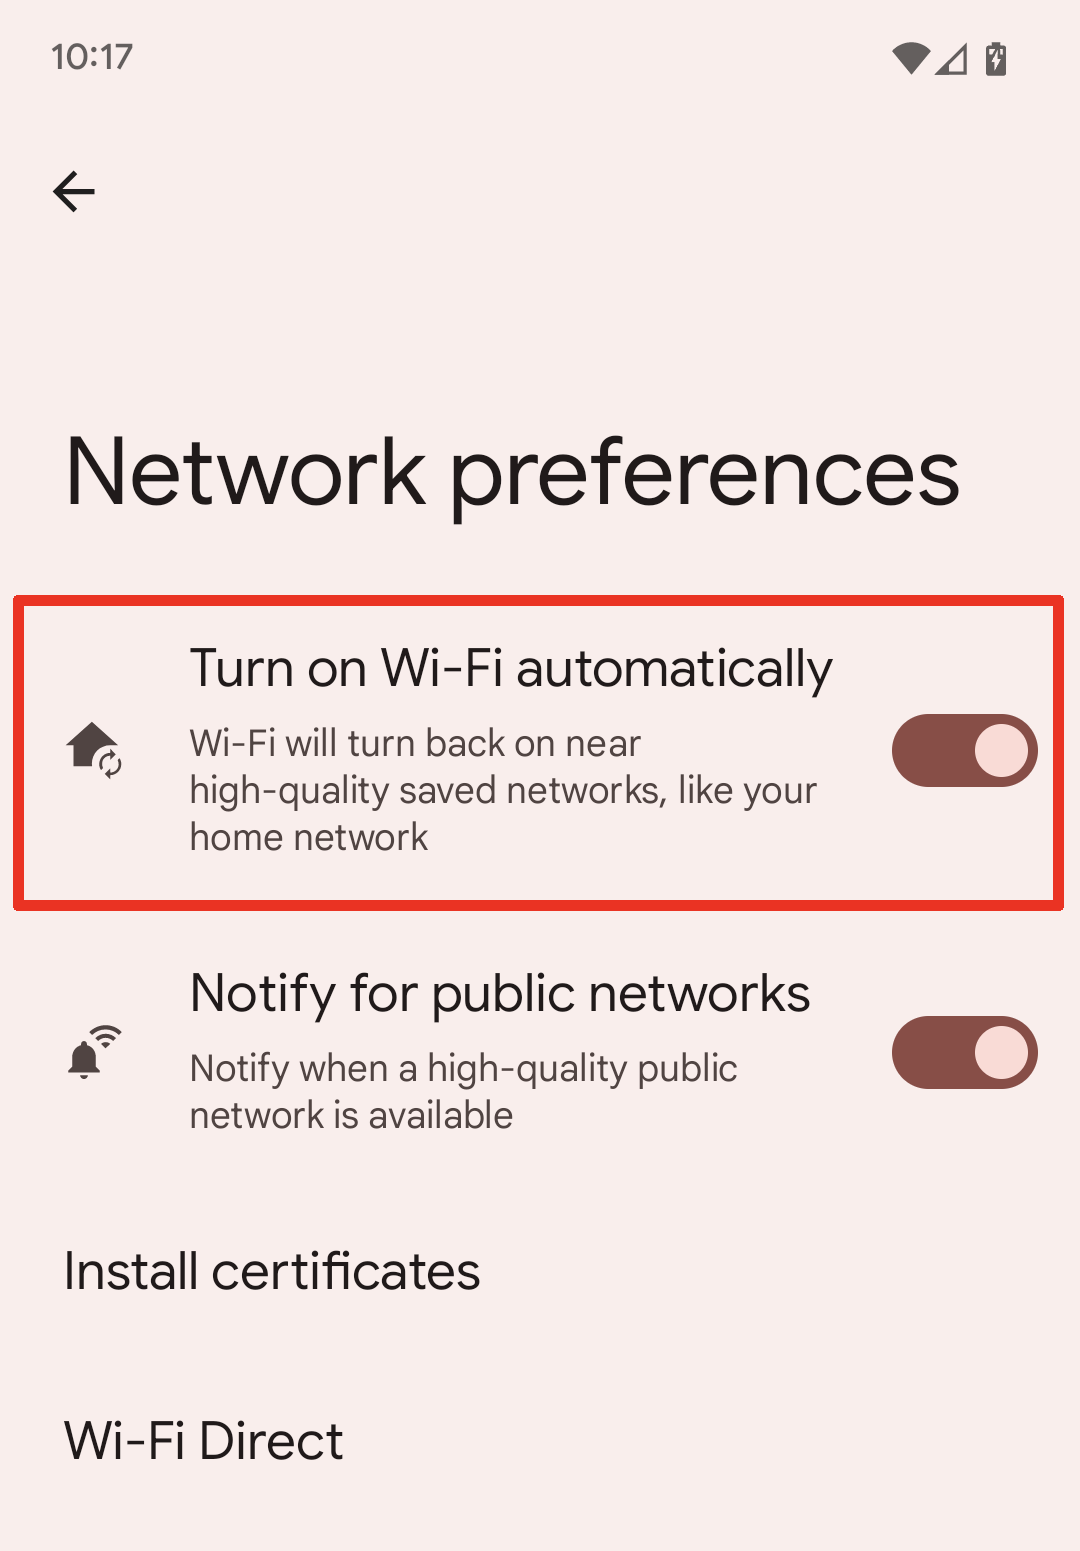 Ative o recurso Wi-Fi automaticamente